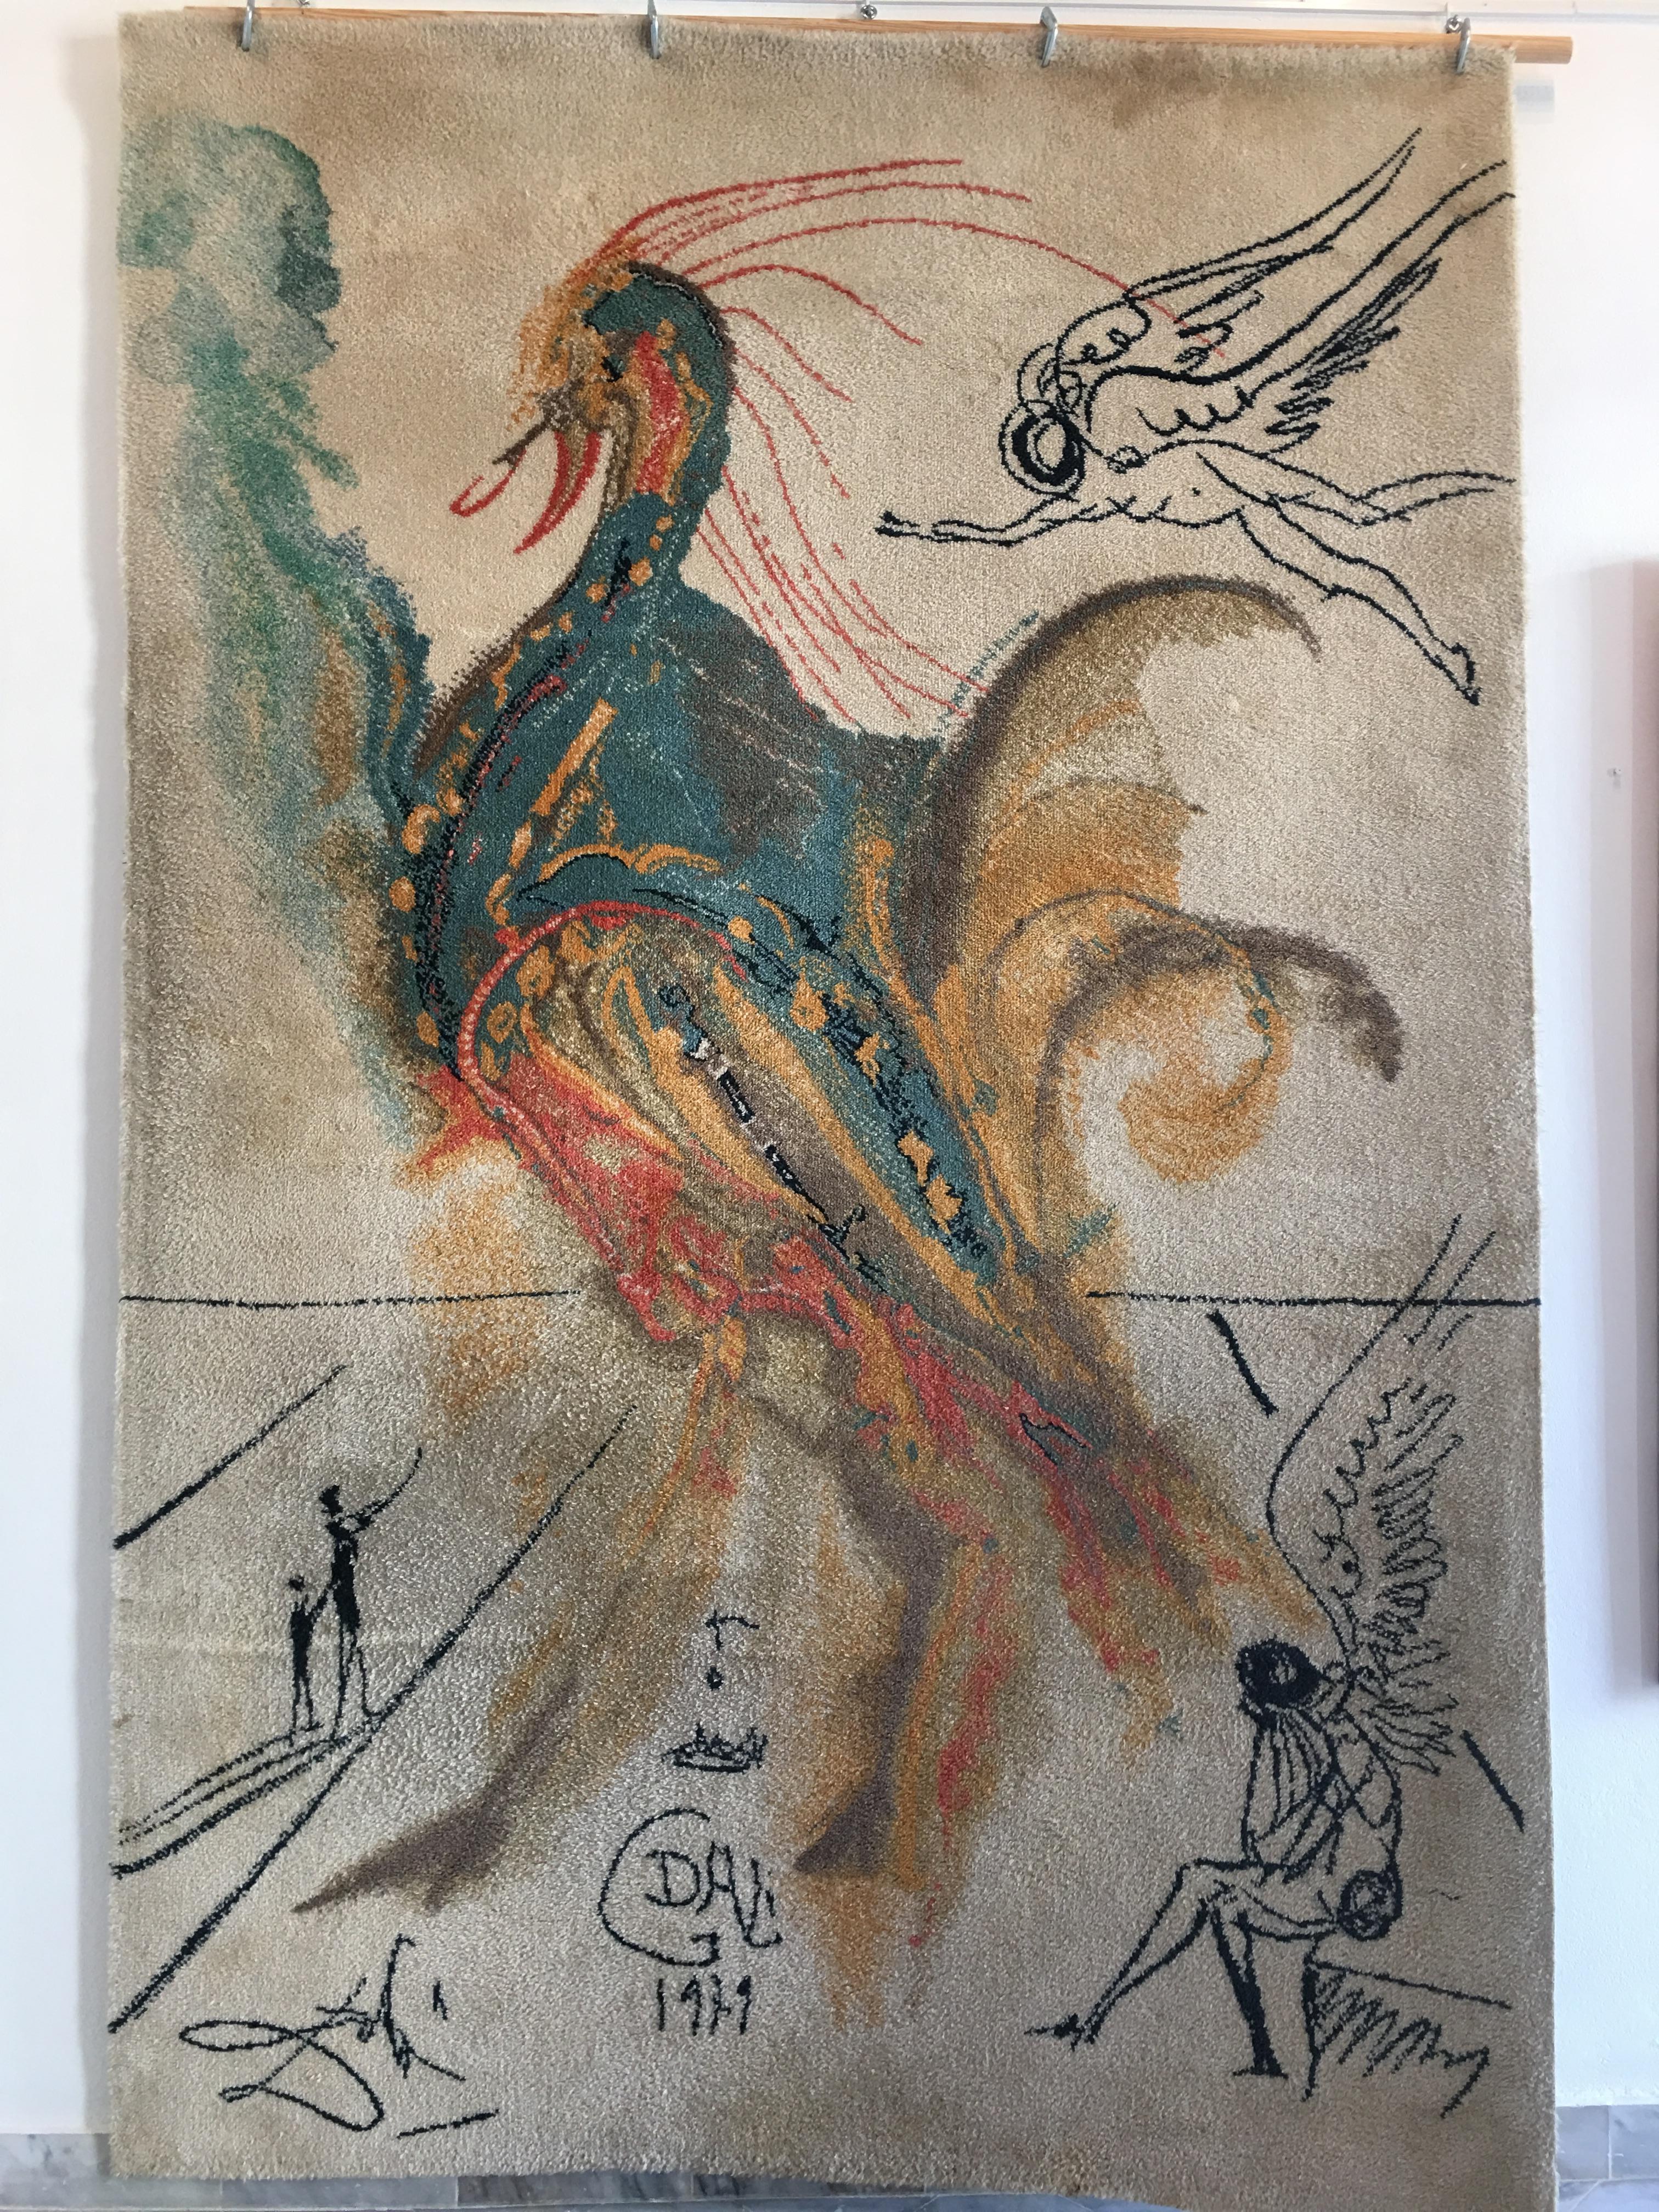 Le Grand Pavon - Print by Salvador Dalí